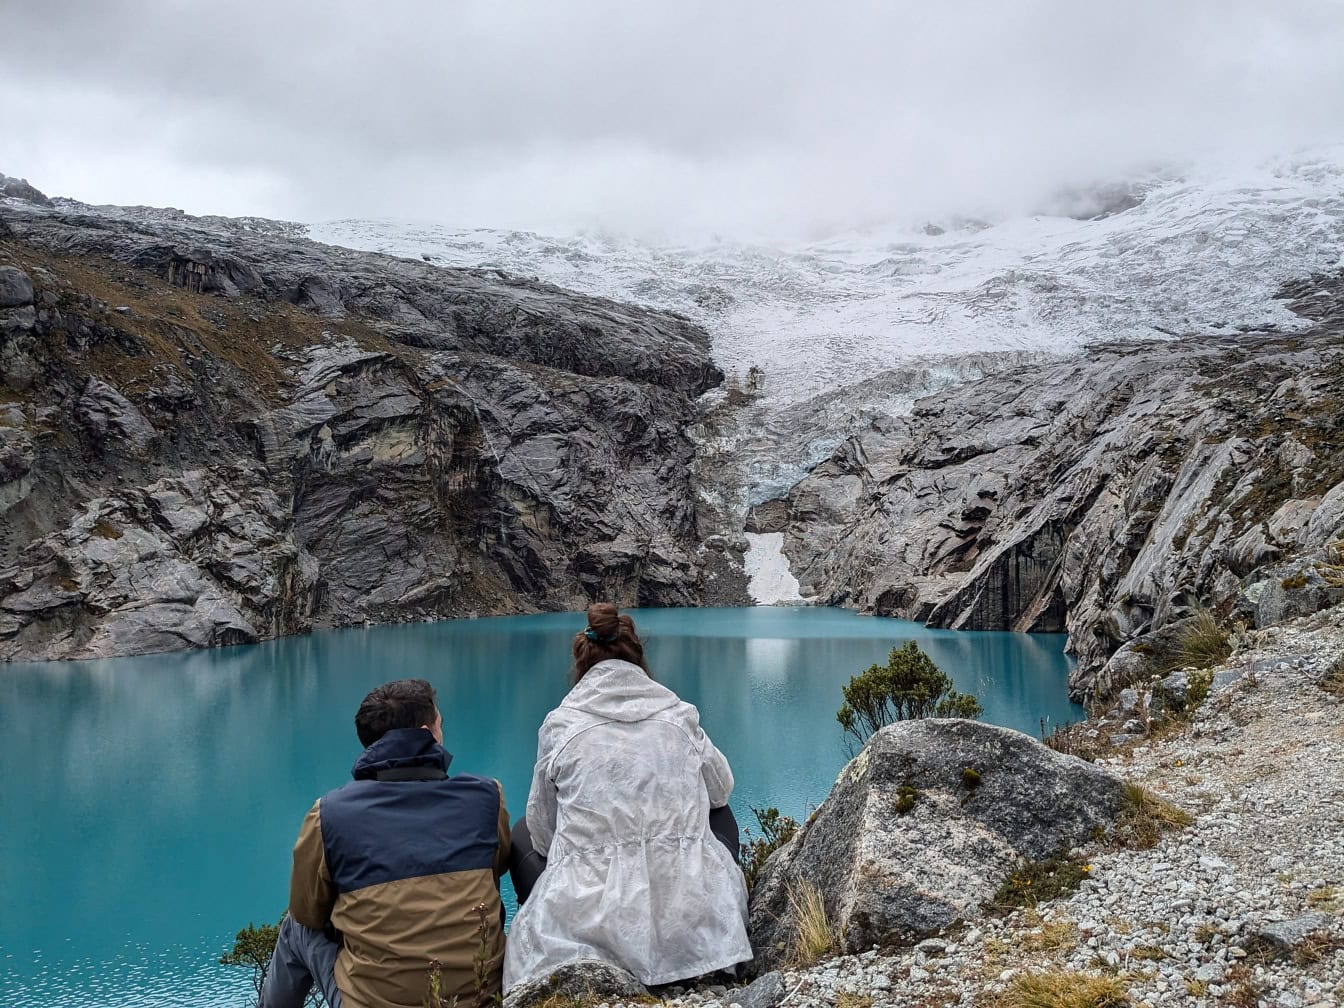 Mann und Frau sitzen am Ufer des Sees 513, einem Gletschersee am Fuße des Berges Nevado Hualcan im Huascaran-Nationalpark, Peru